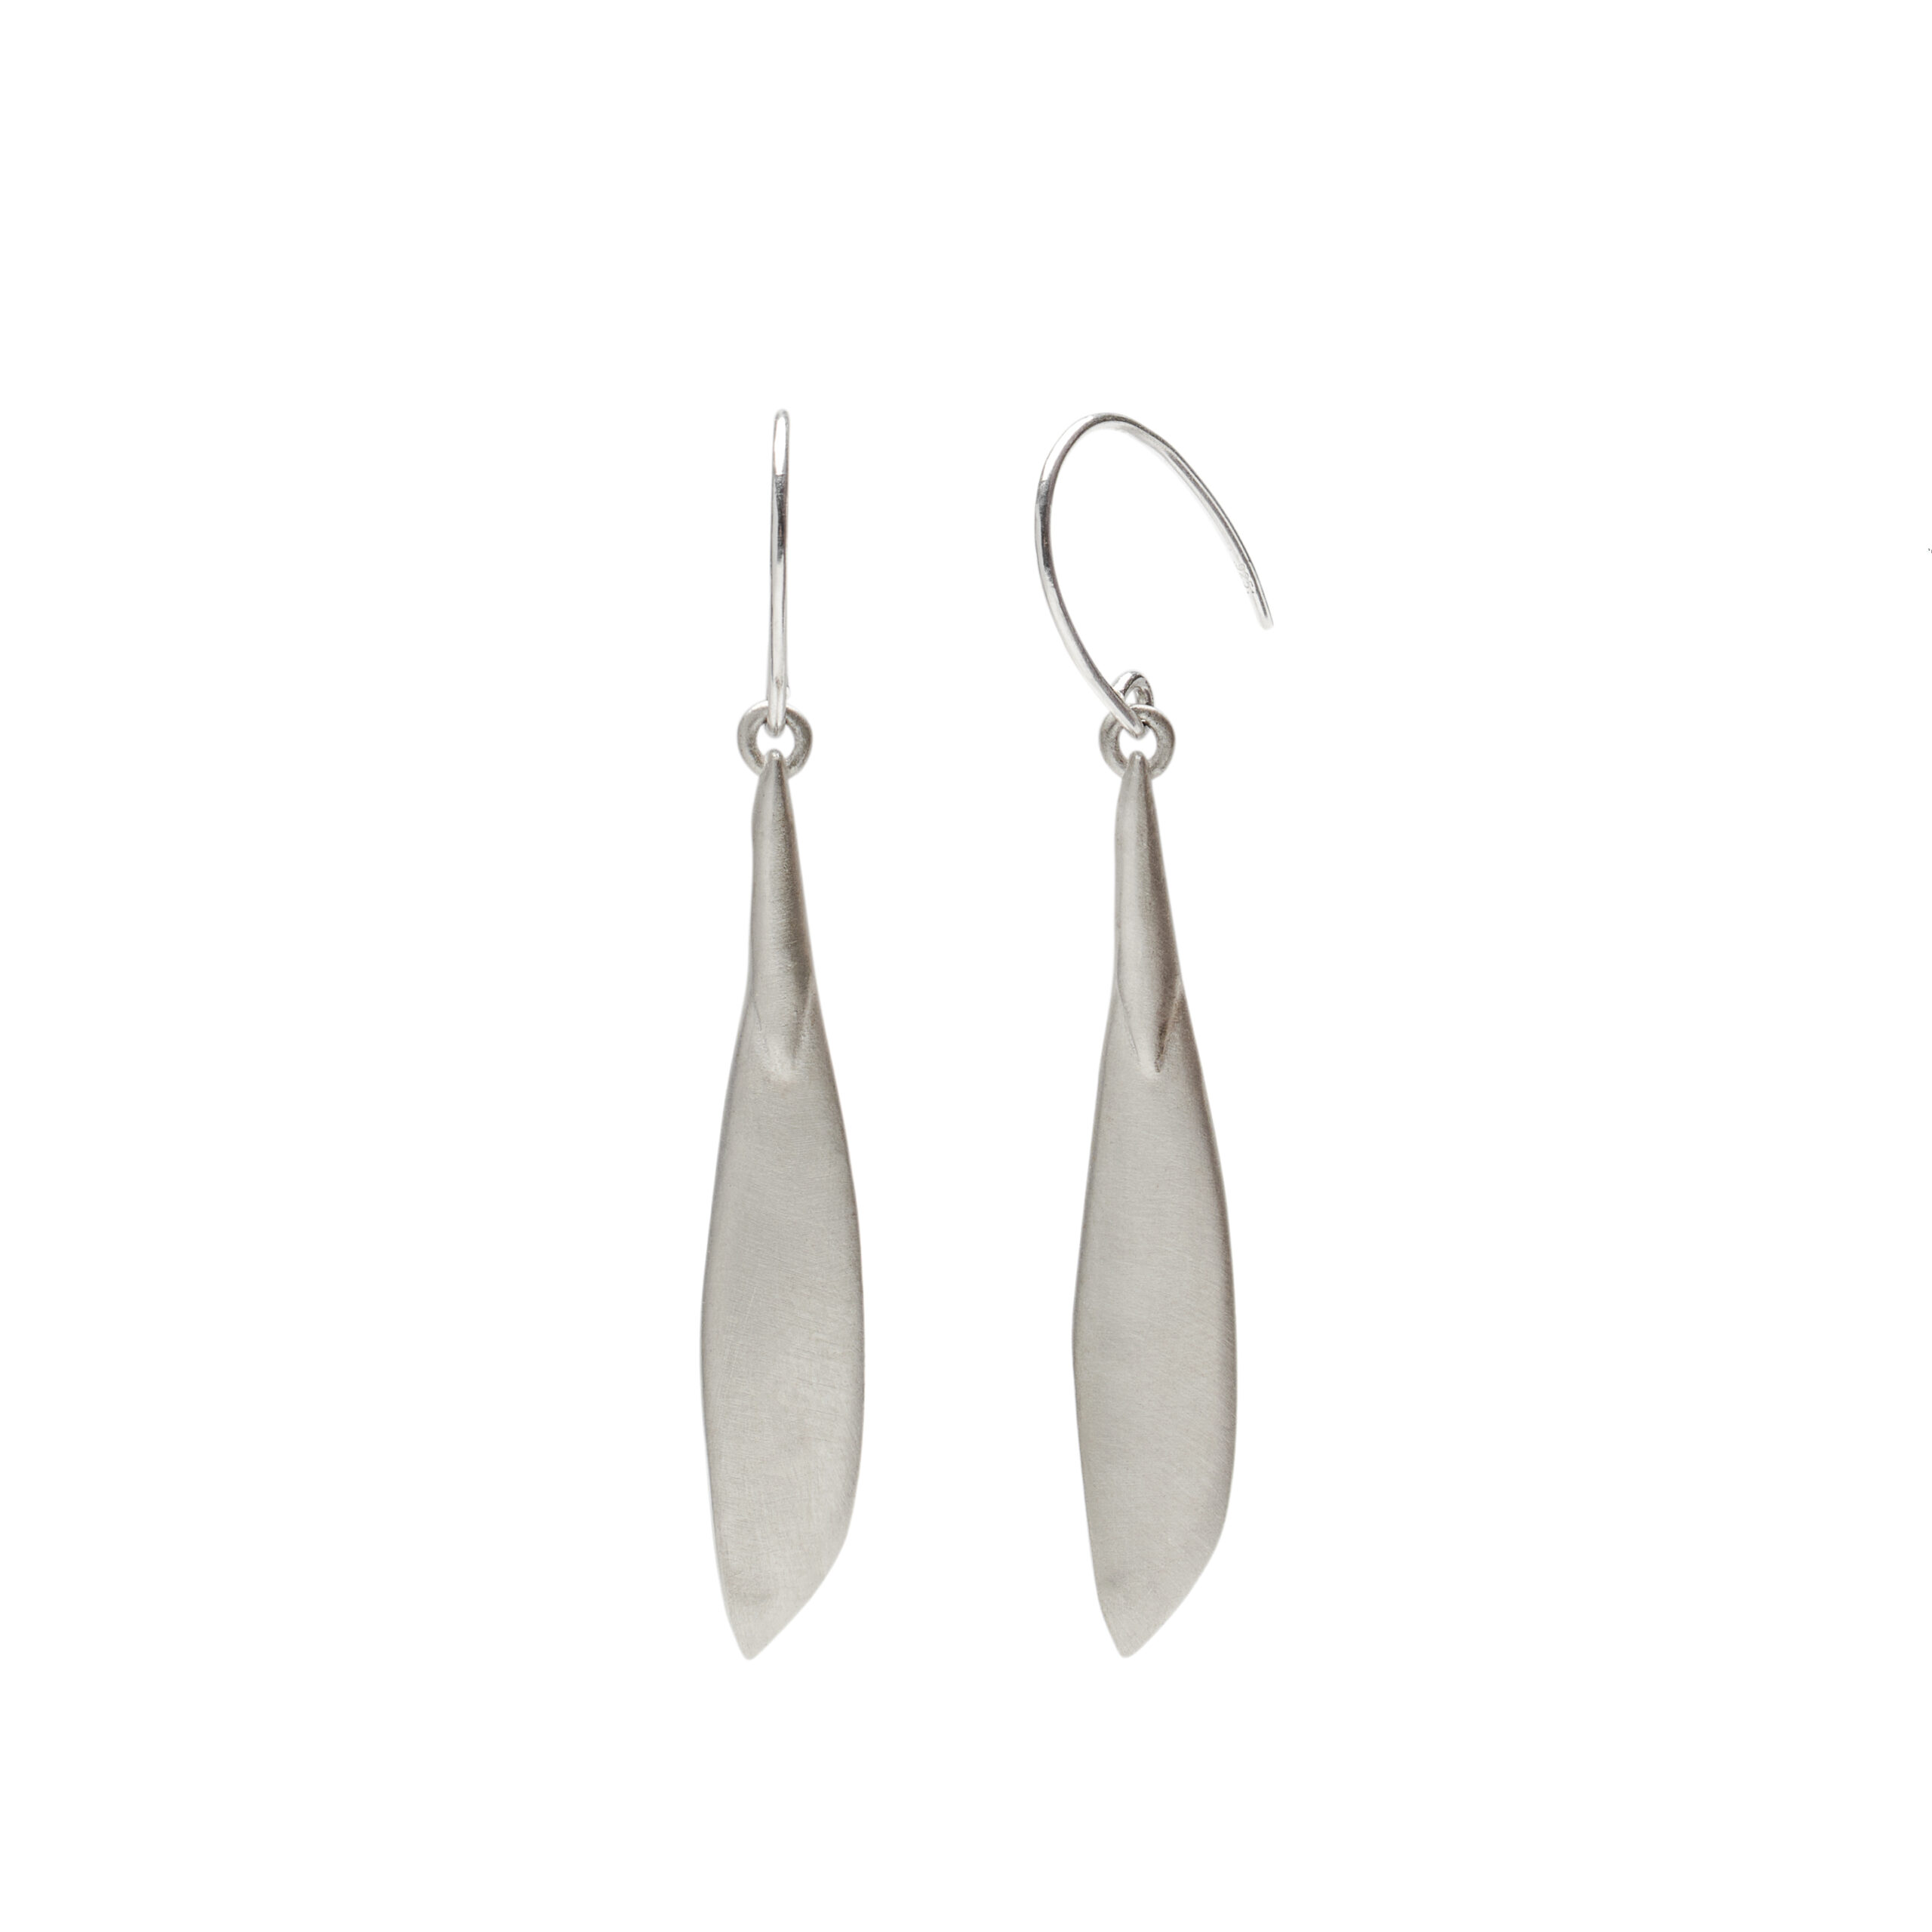 Silver earrings of ash tree seed pod